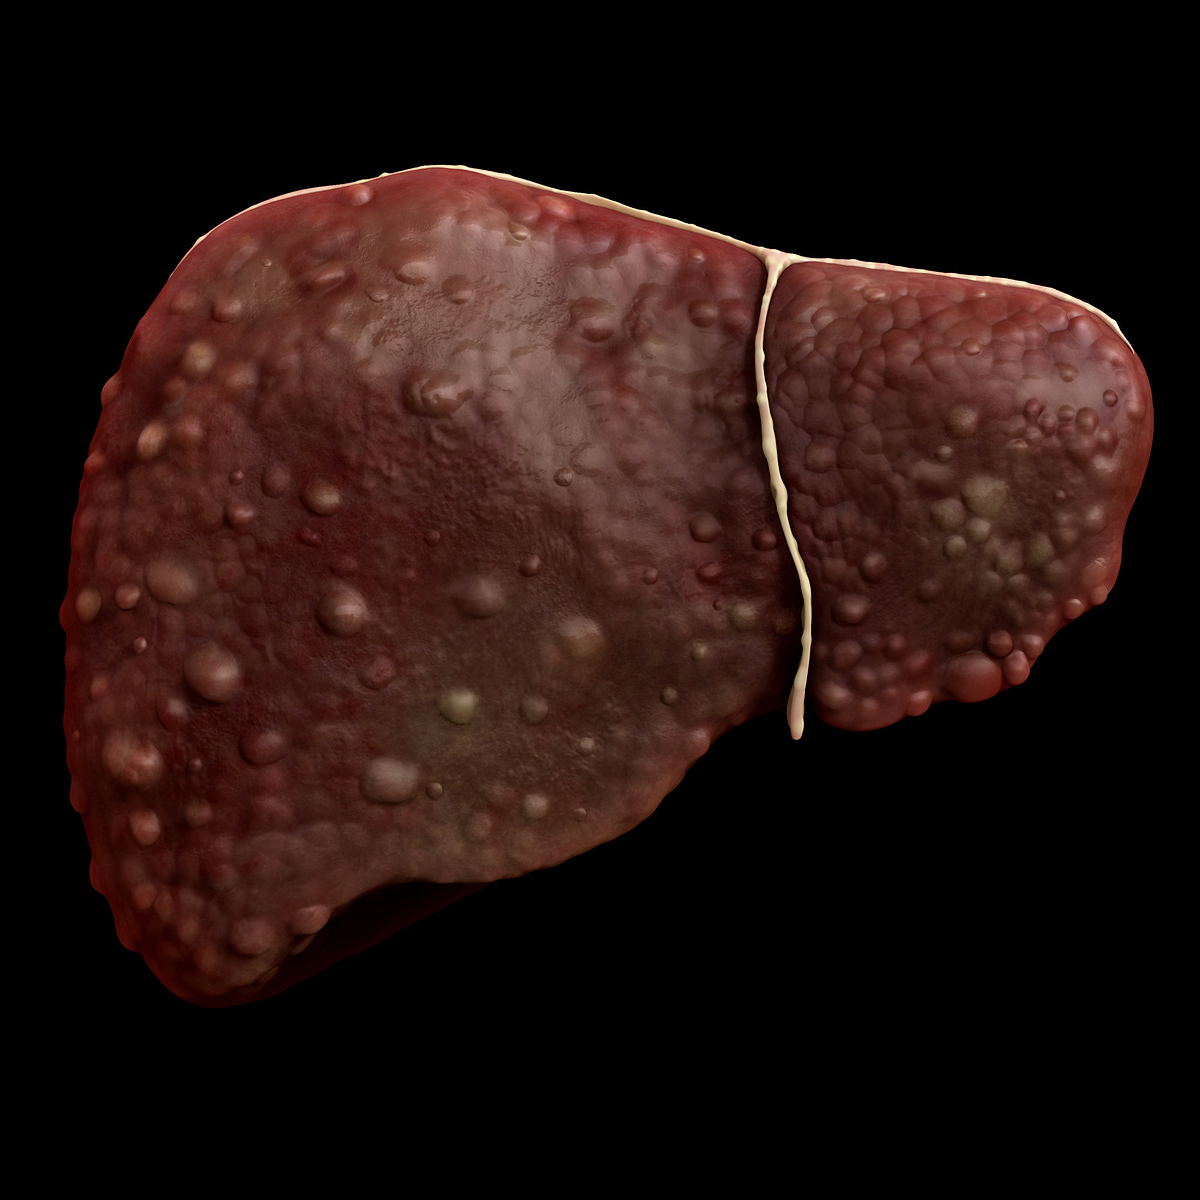 Cirrhosis liver